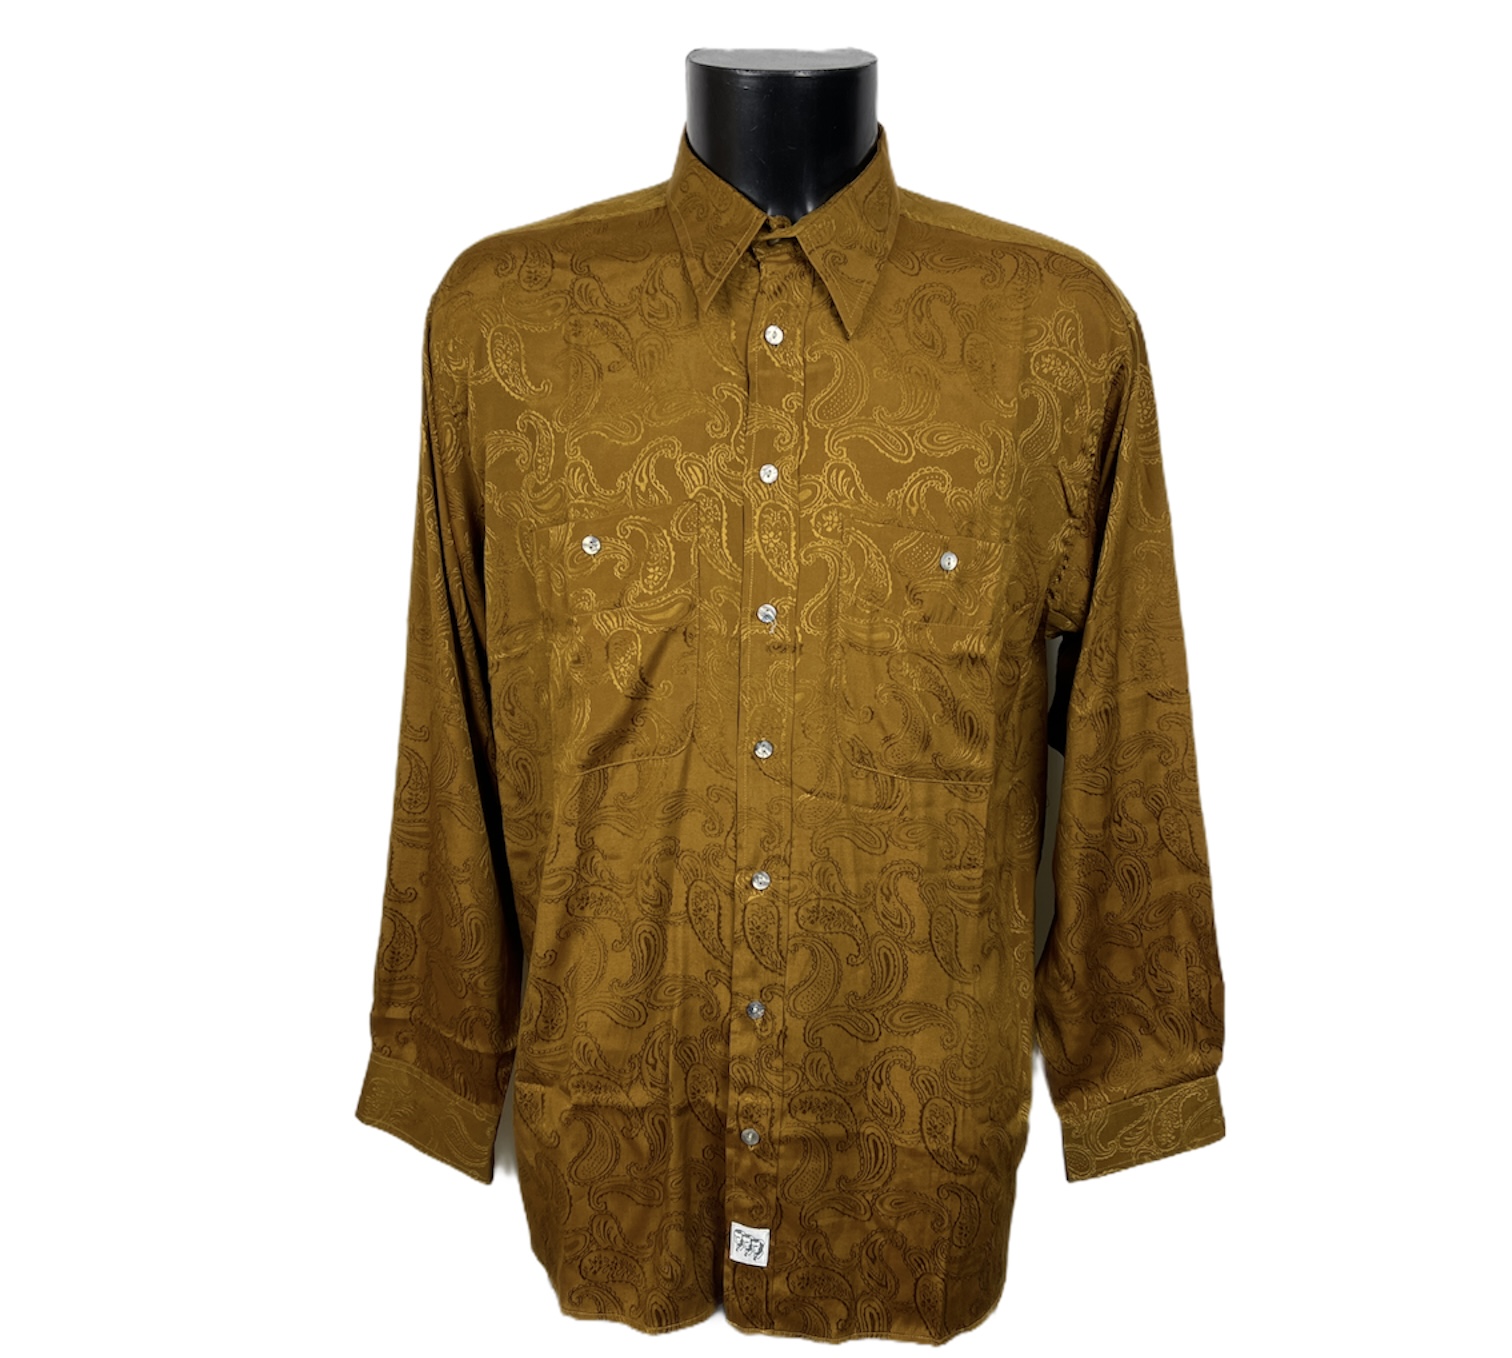 Camicia damascata vintage da uomo dorata scuro con bottoni bianchi